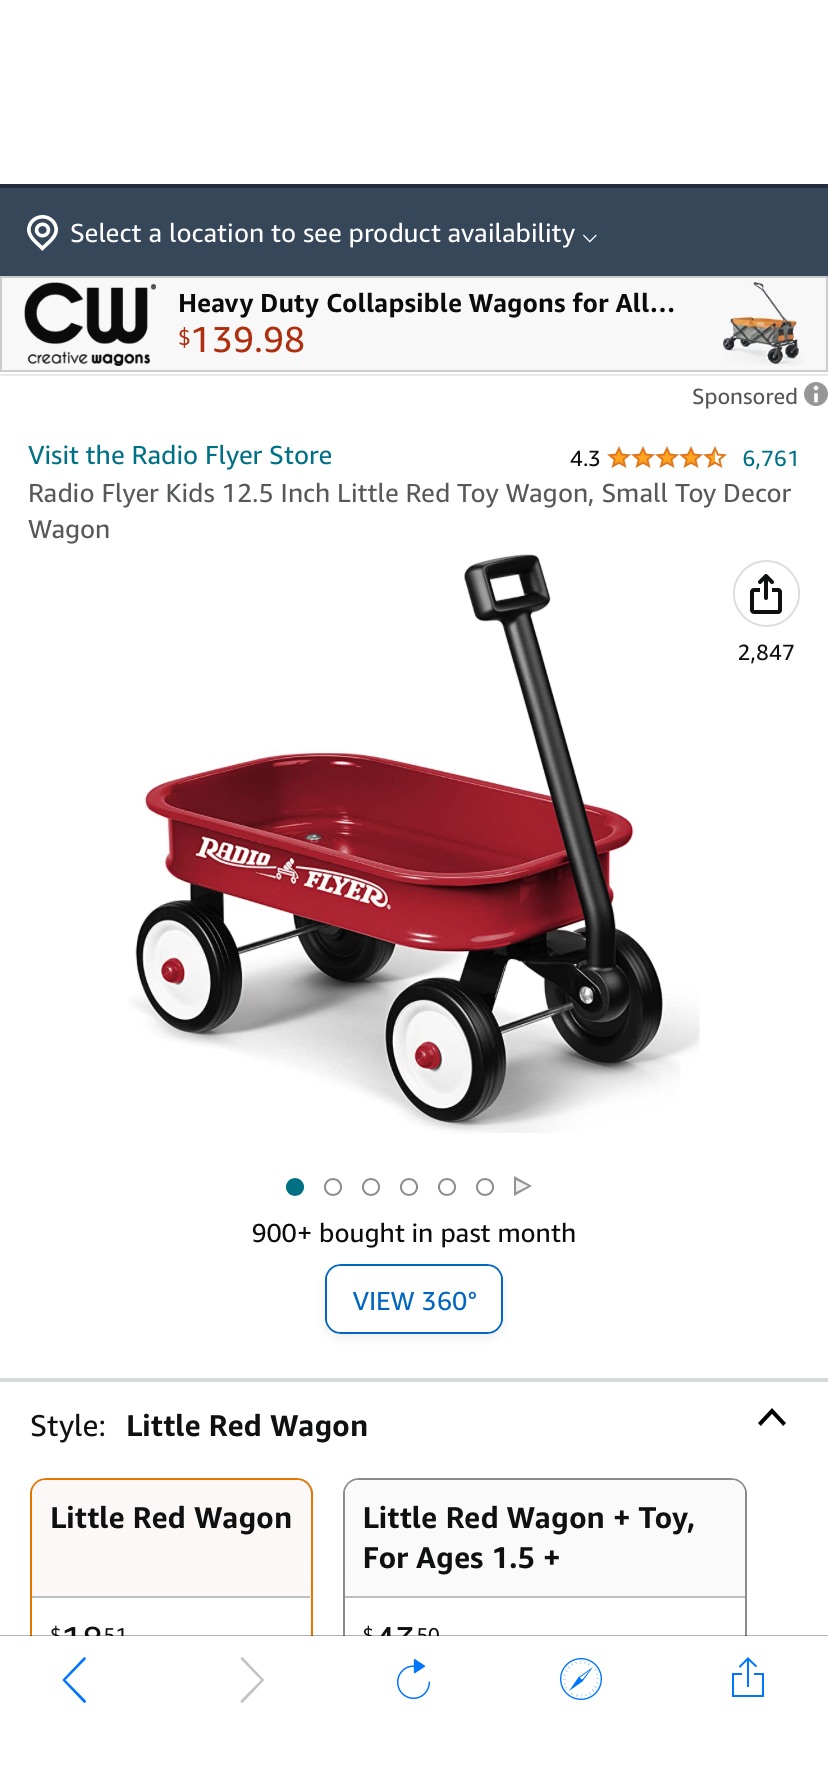 儿童小拖车Amazon.com: Radio Flyer Kids 12.5 Inch Little Red Toy Wagon, Small Toy Decor Wagon : Toys & Games